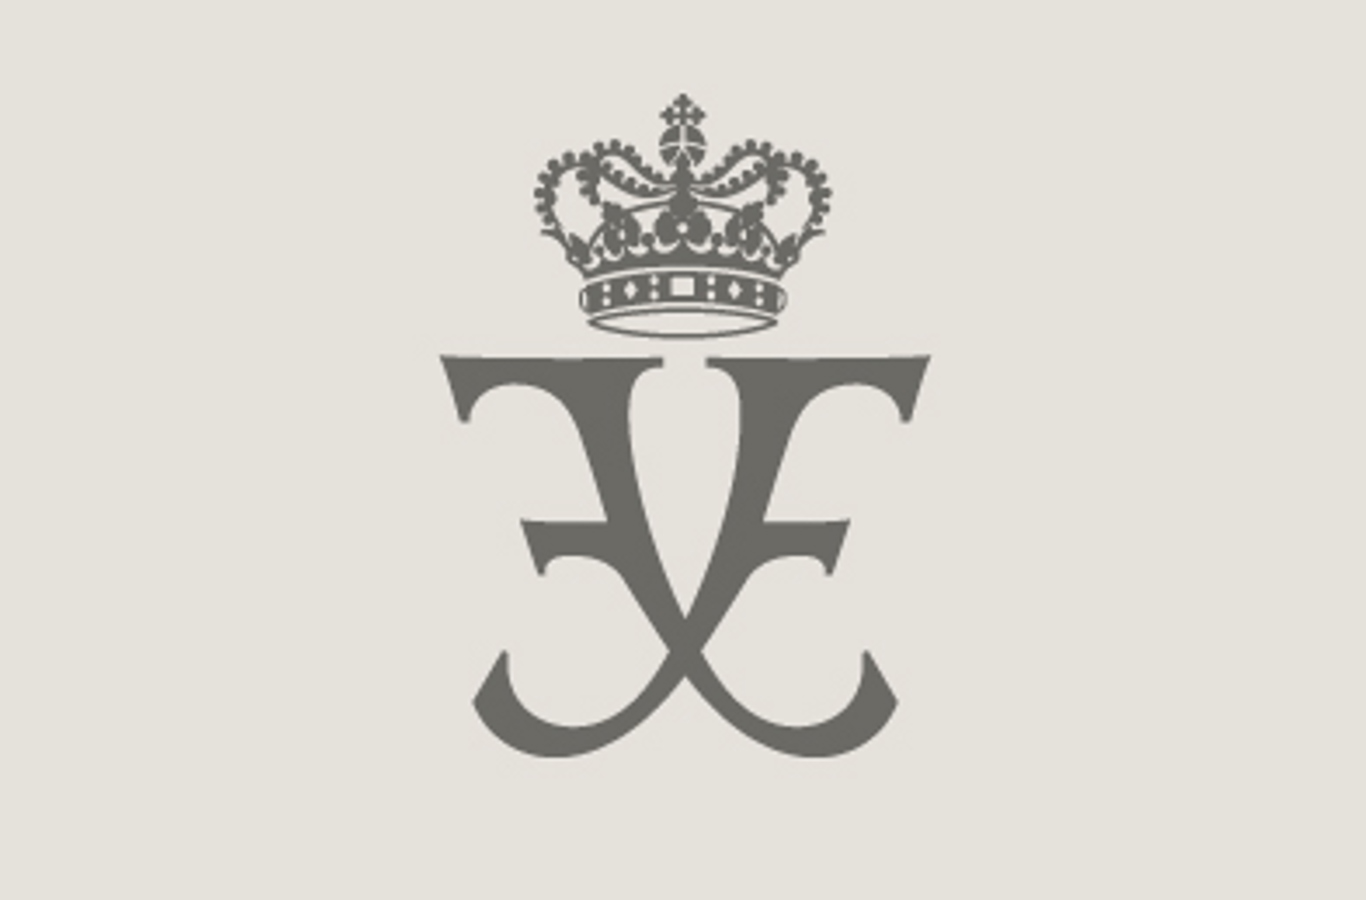 Hans Kongelige Højhed Kronprinsens monogram